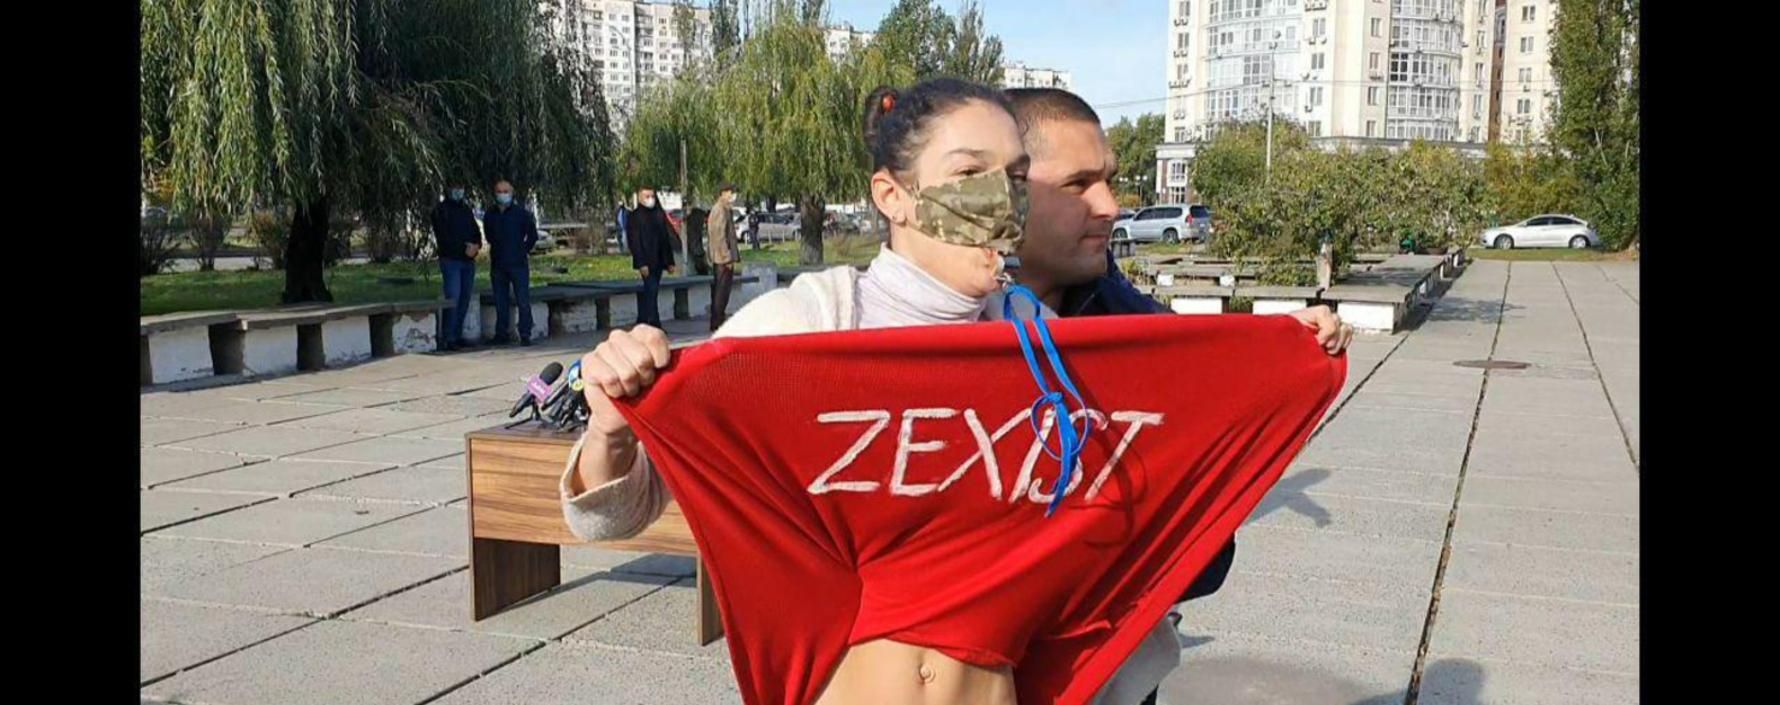 Активістка Femen оголилась перед Зеленським на дільниці: фото, відео 